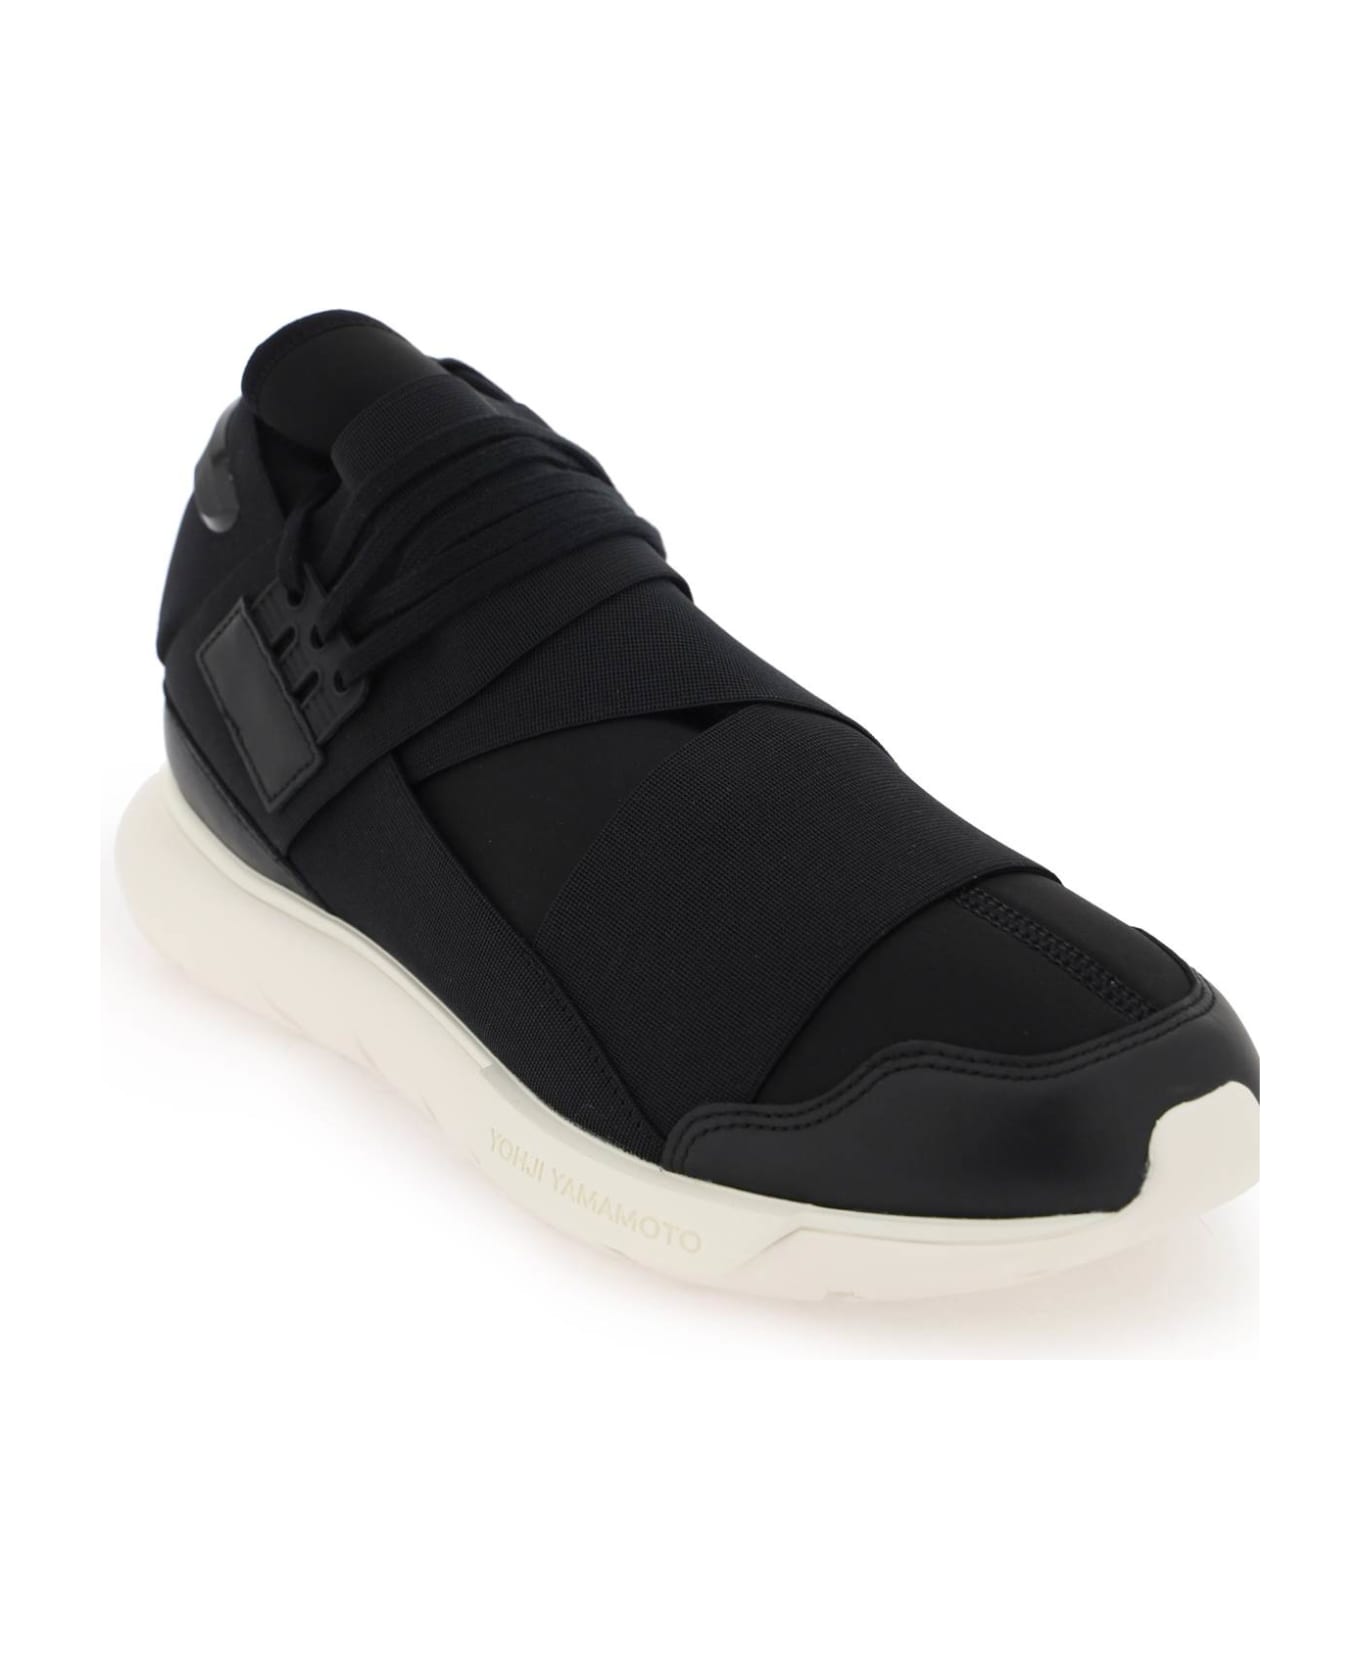 Y-3 Low Qasa Sneakers - BLACK BLACK OWHITE (Black) スニーカー